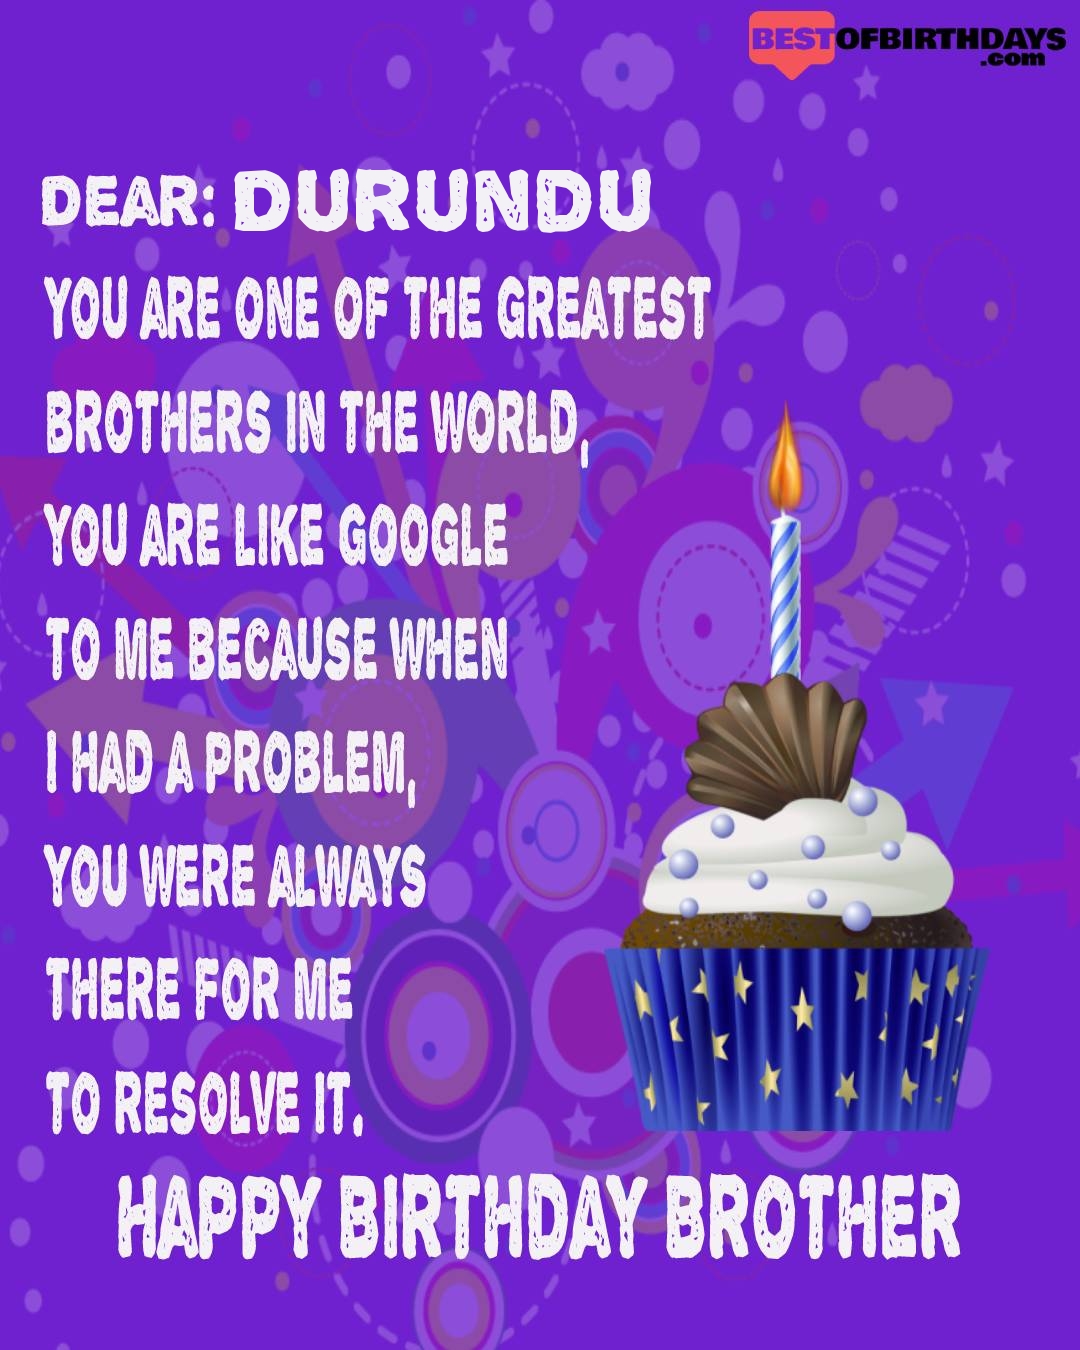 Happy birthday durundu bhai brother bro